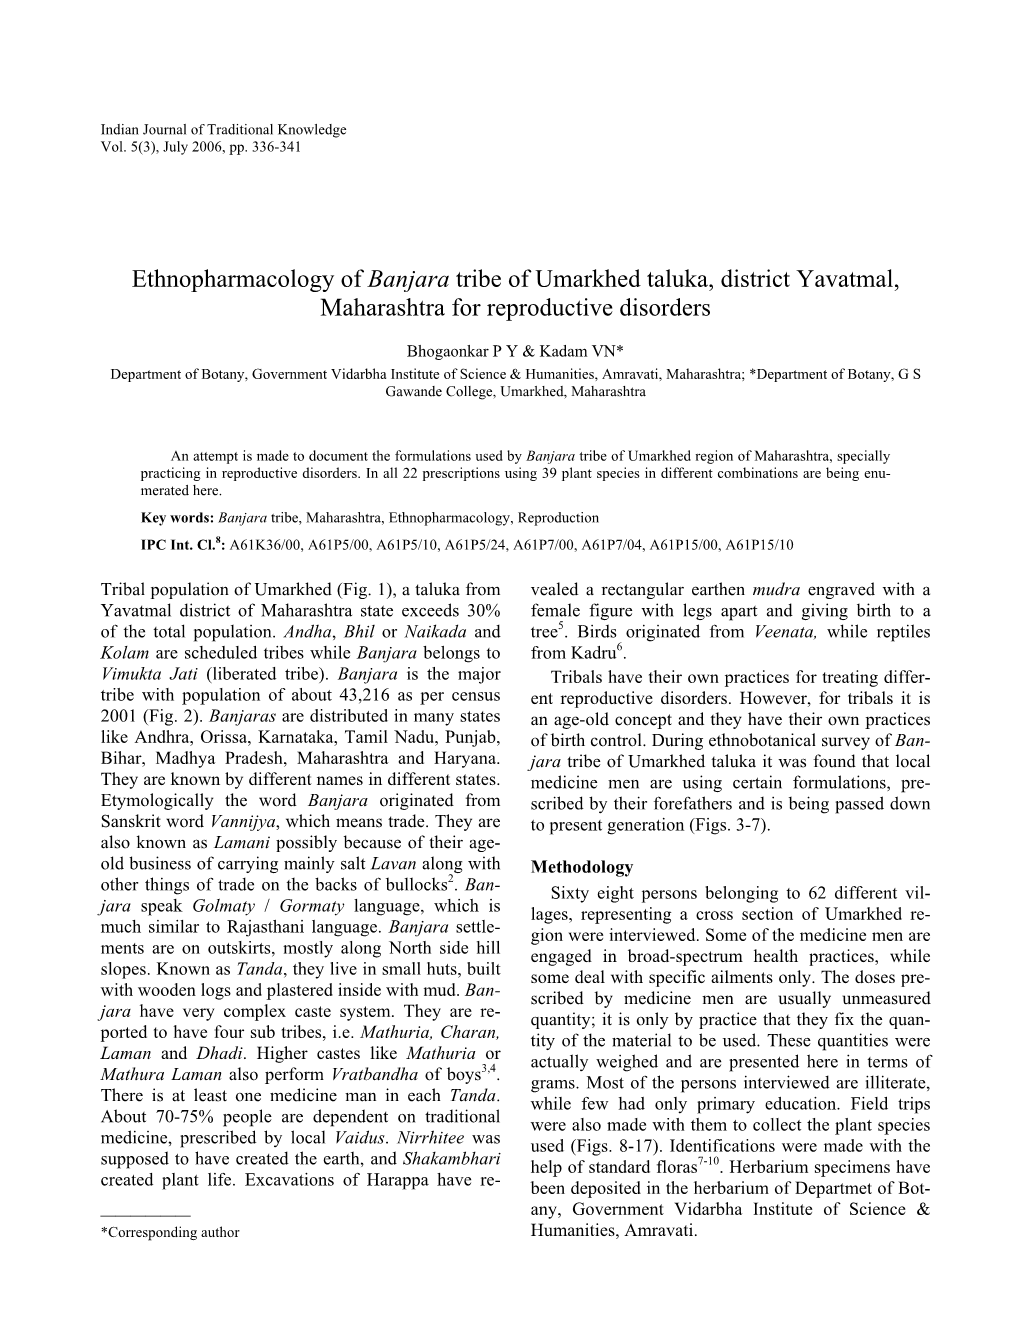 Ethnopharmacology of Banjara Tribe of Umarkhed Taluka, District Yavatmal, Maharashtra for Reproductive Disorders